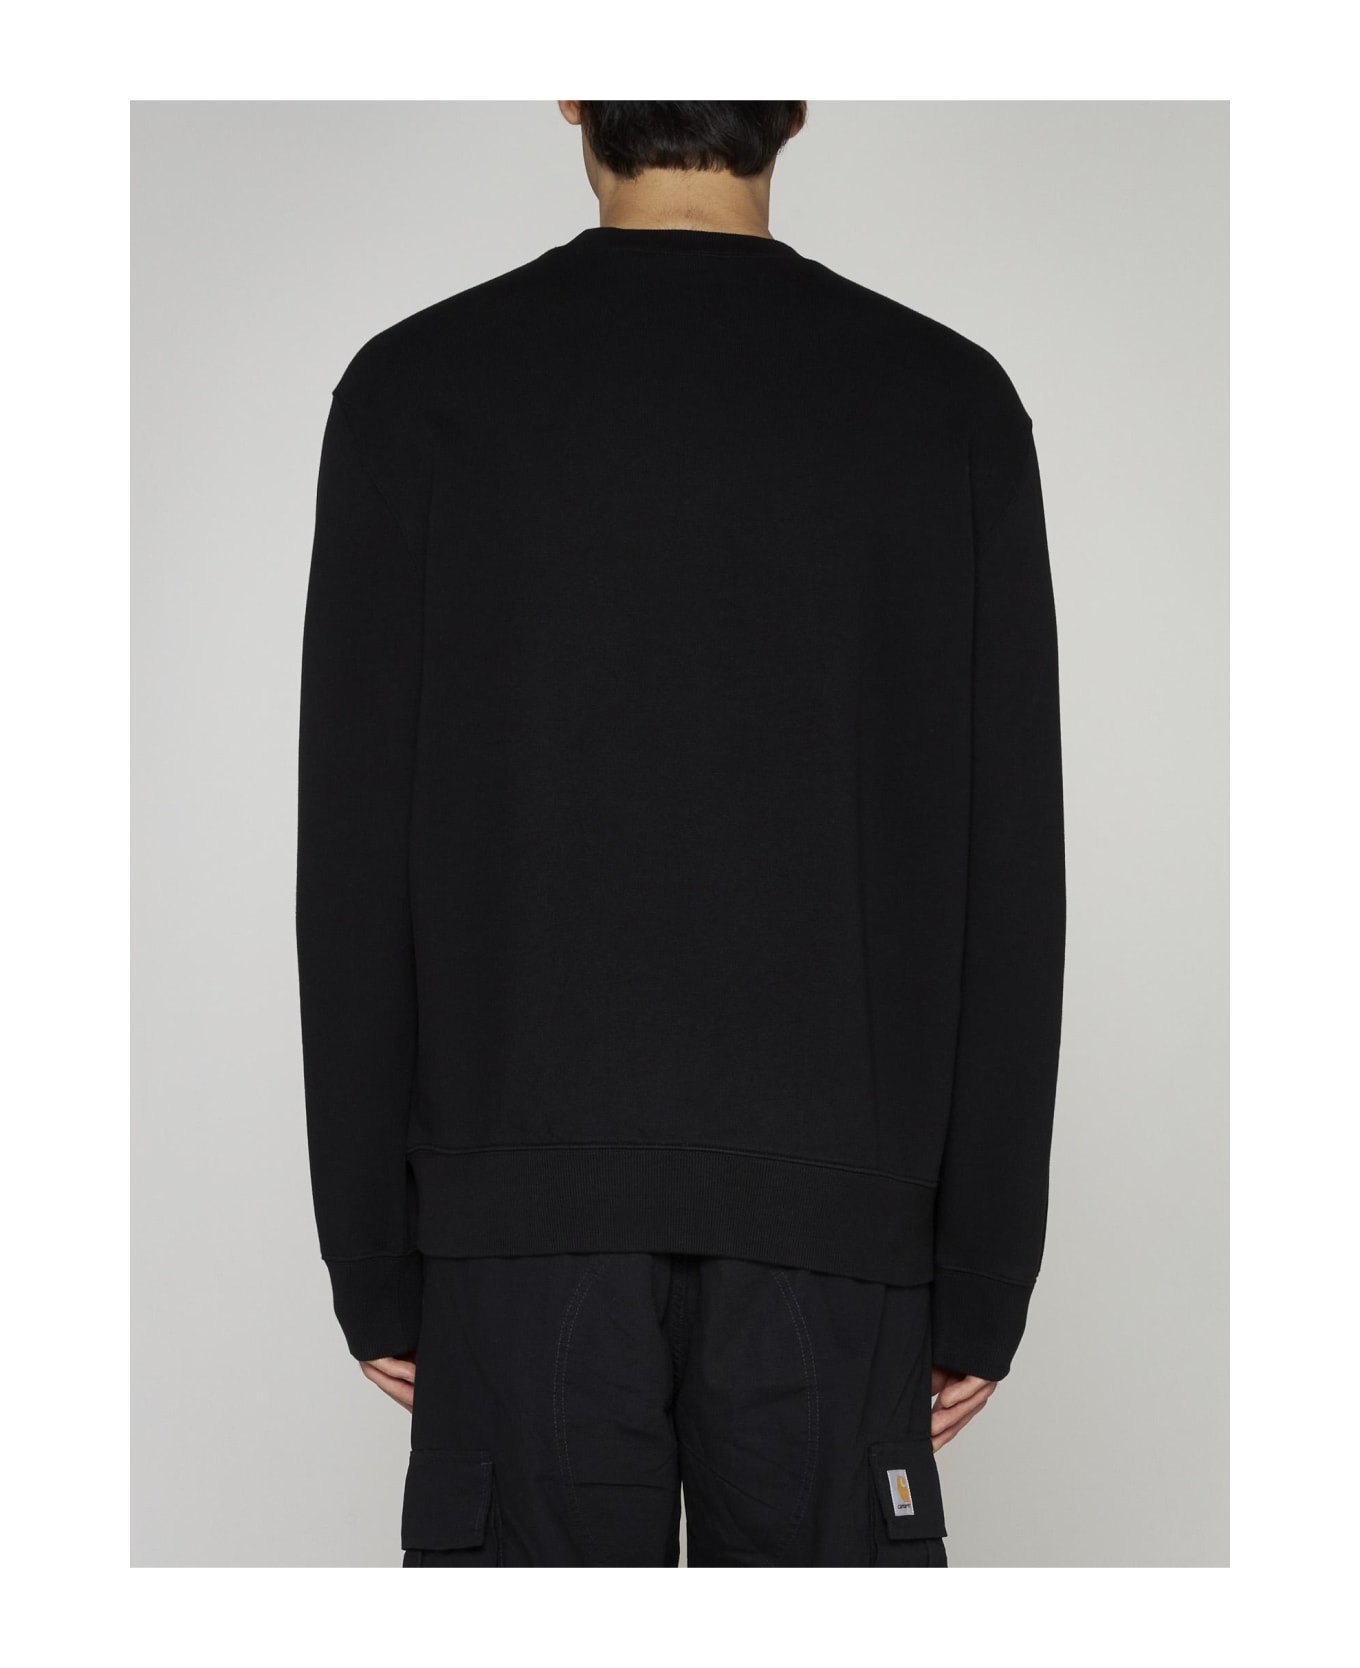 Carhartt Chest Pocket Cotton Sweatshirt - Black